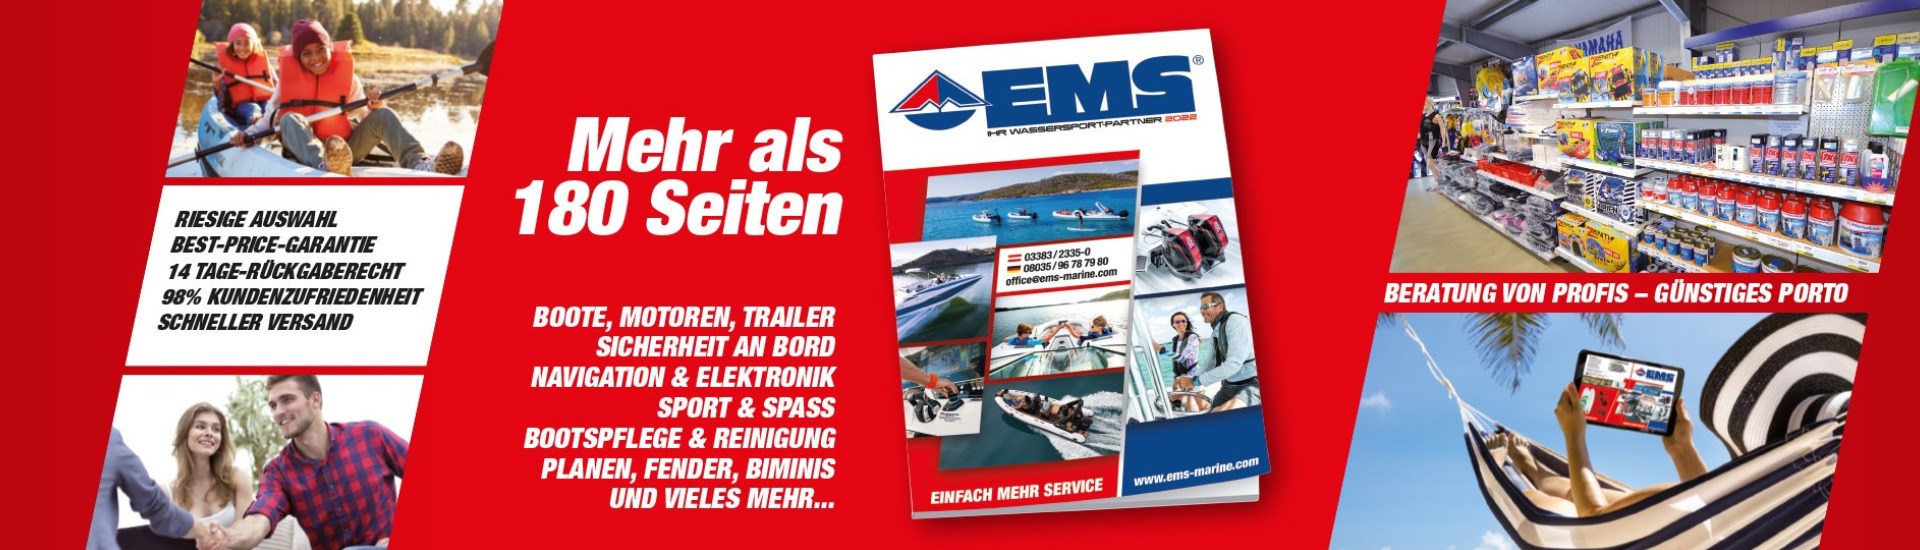 EMS Marine - 180 Seiten Boote und Marine Katalog mit Riesen Auswahl an Booten, Motoren, und Bootszubehör